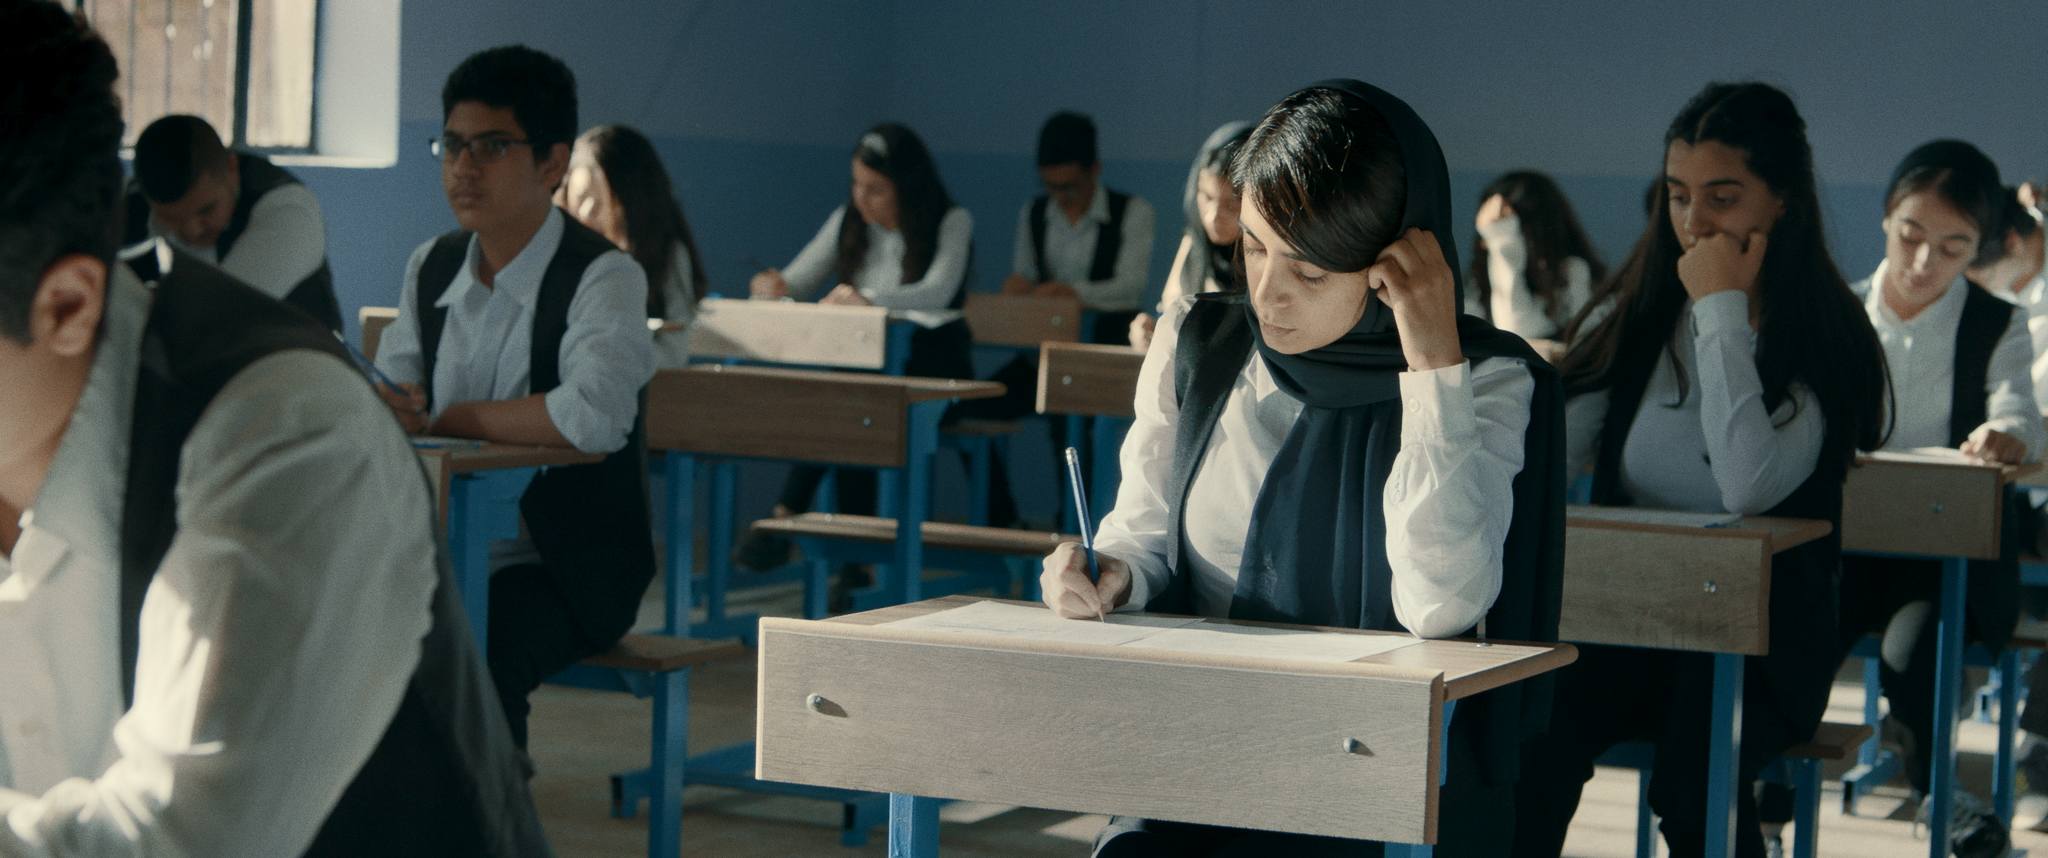 Apriti Cinema presenta il film “The Exam”